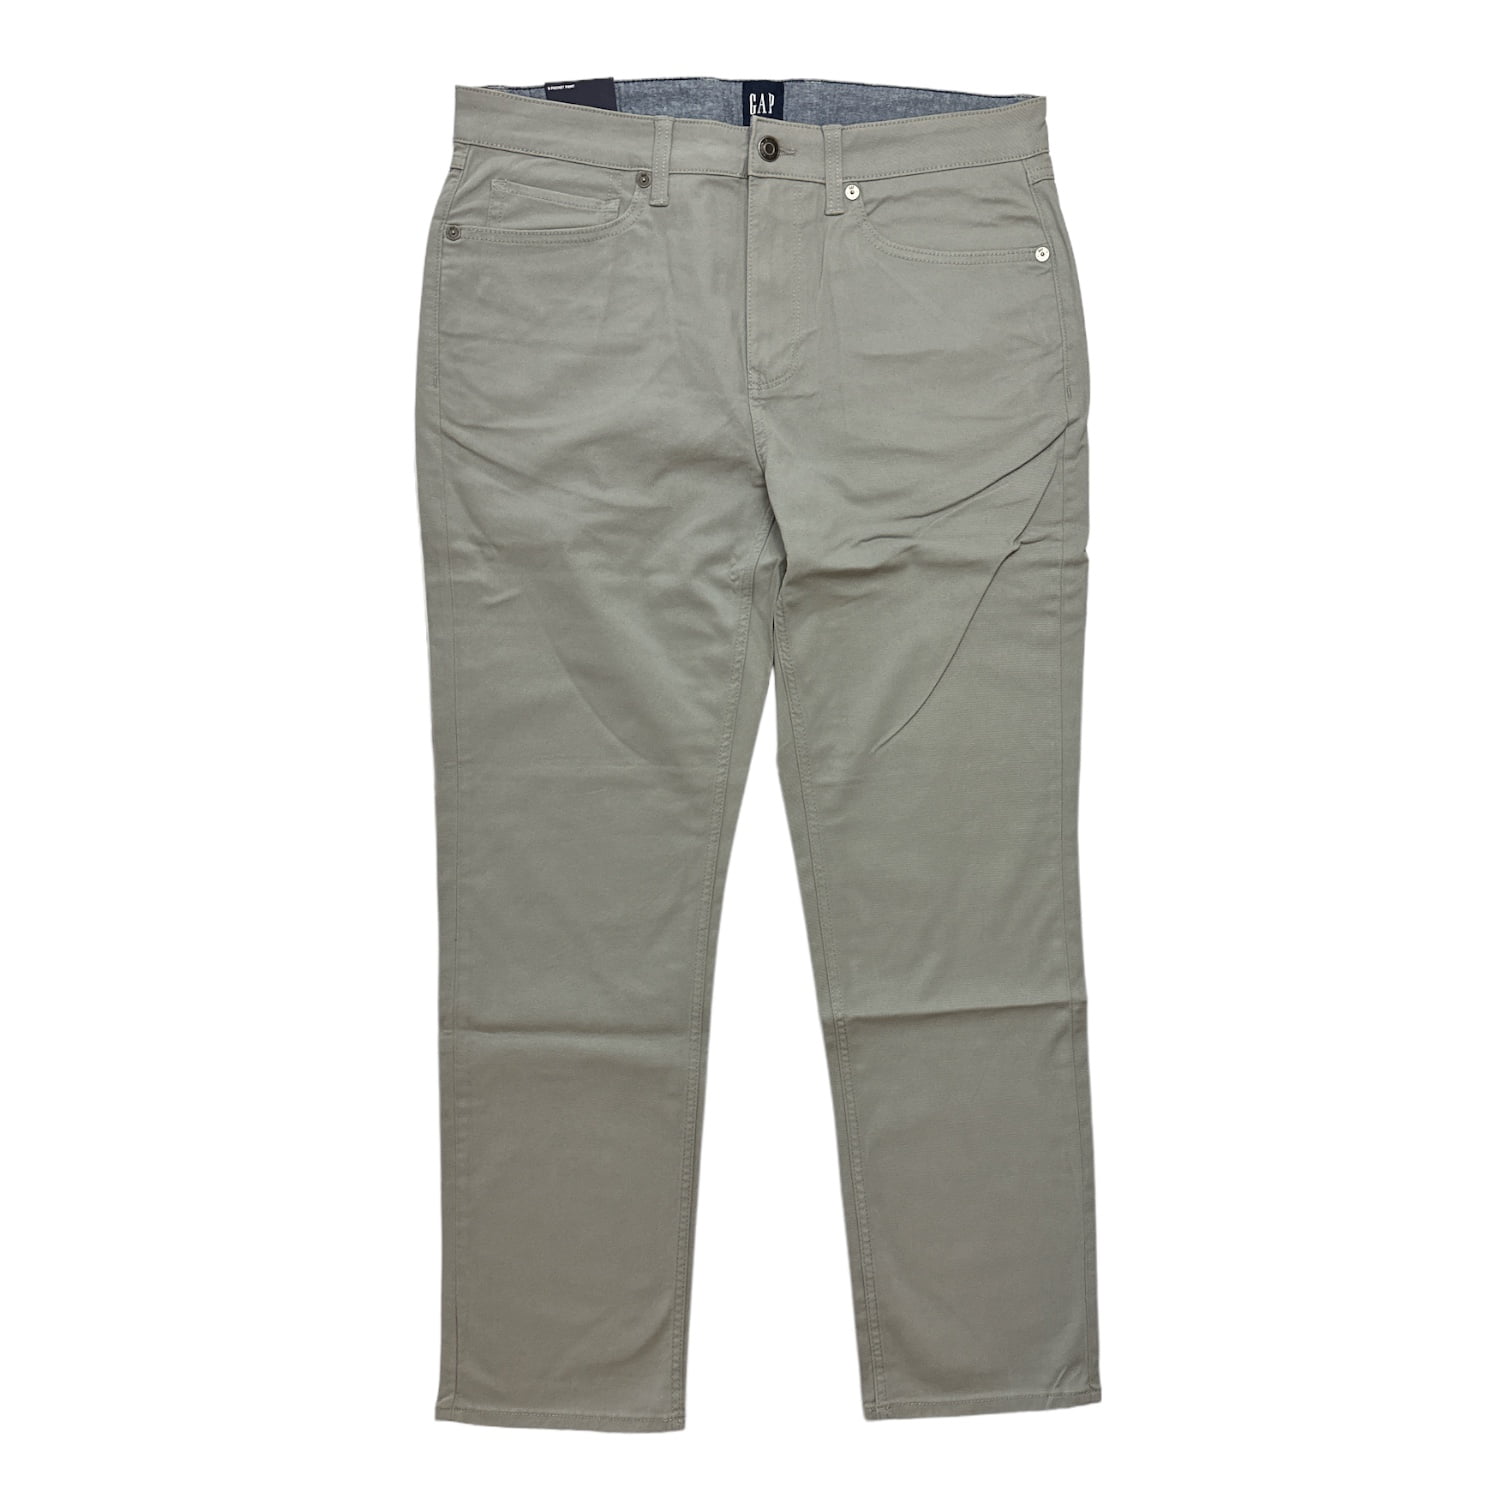 Gap Men's Slim Fit 5 Pocket Pant Limestone Size 32W X 30L Stretch